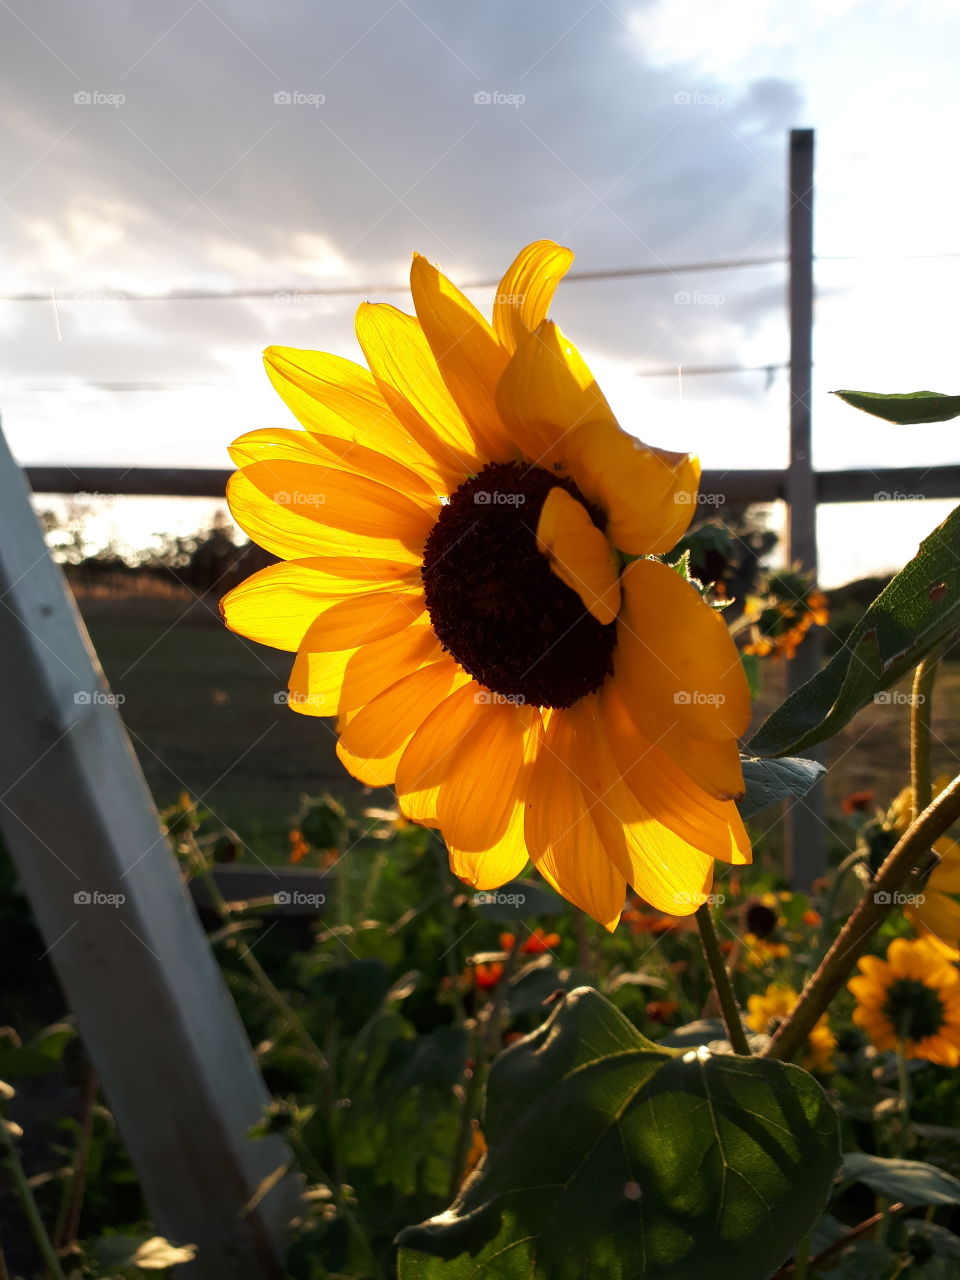 Golden sunshine sunflower, in the sun setting light.